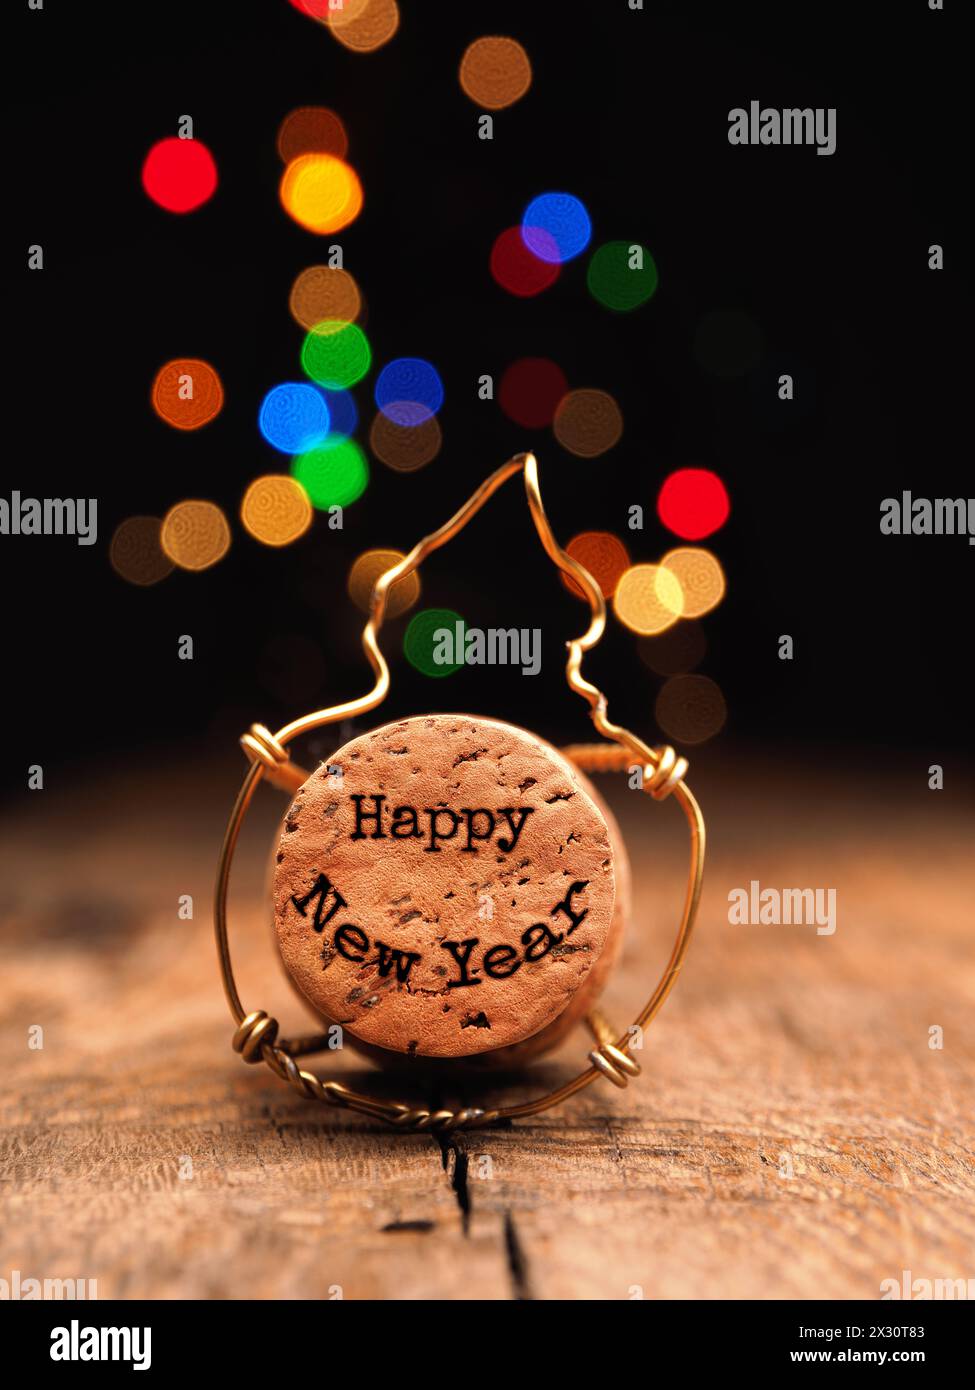 Bottiglia di champagne con scritta Happy New Year , concetto di Capodanno, cartolina di auguri, luci di Natale Foto Stock